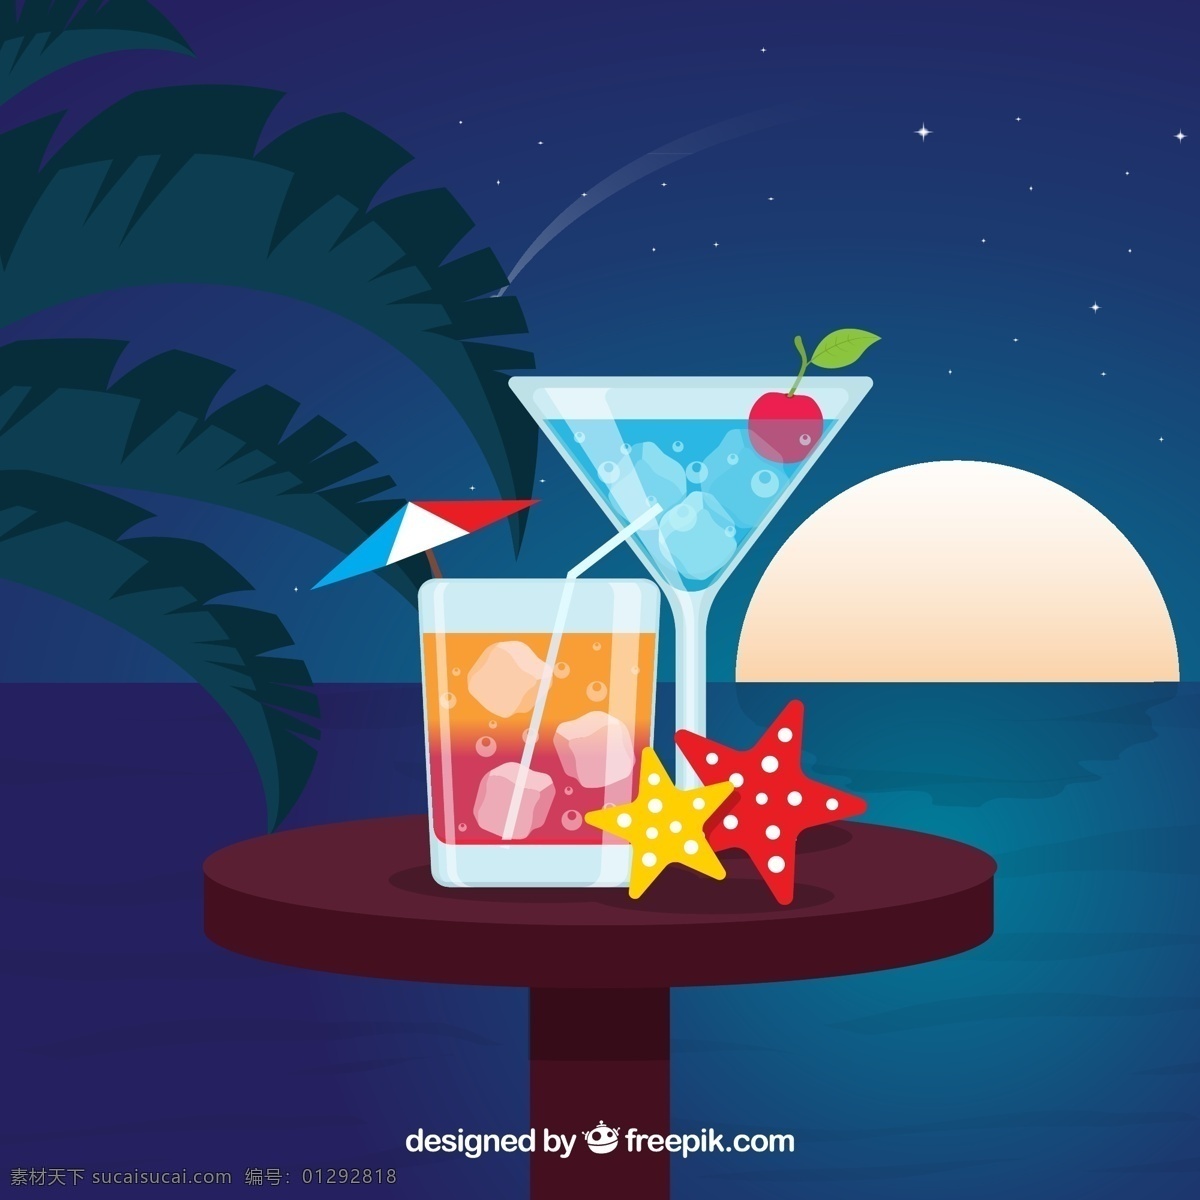 创意 沙滩 餐桌 上 鸡尾酒 矢量图 矢量 夜景 插画 酒